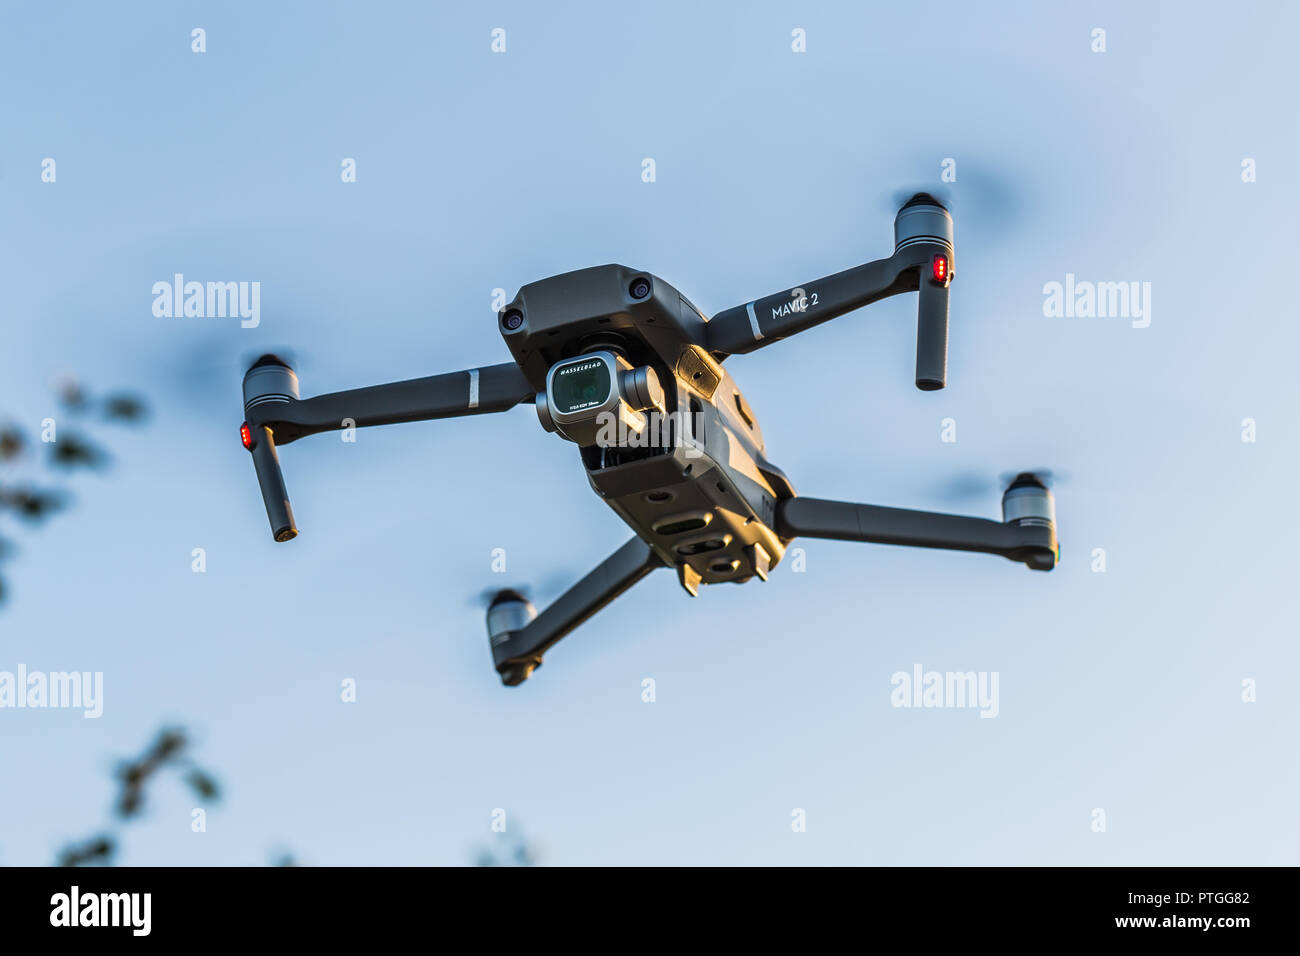 Ostrow Wielkopolski, Poland - September 30, 2018: Flying drone DJI Mavic 2 Pro. Stock Photo